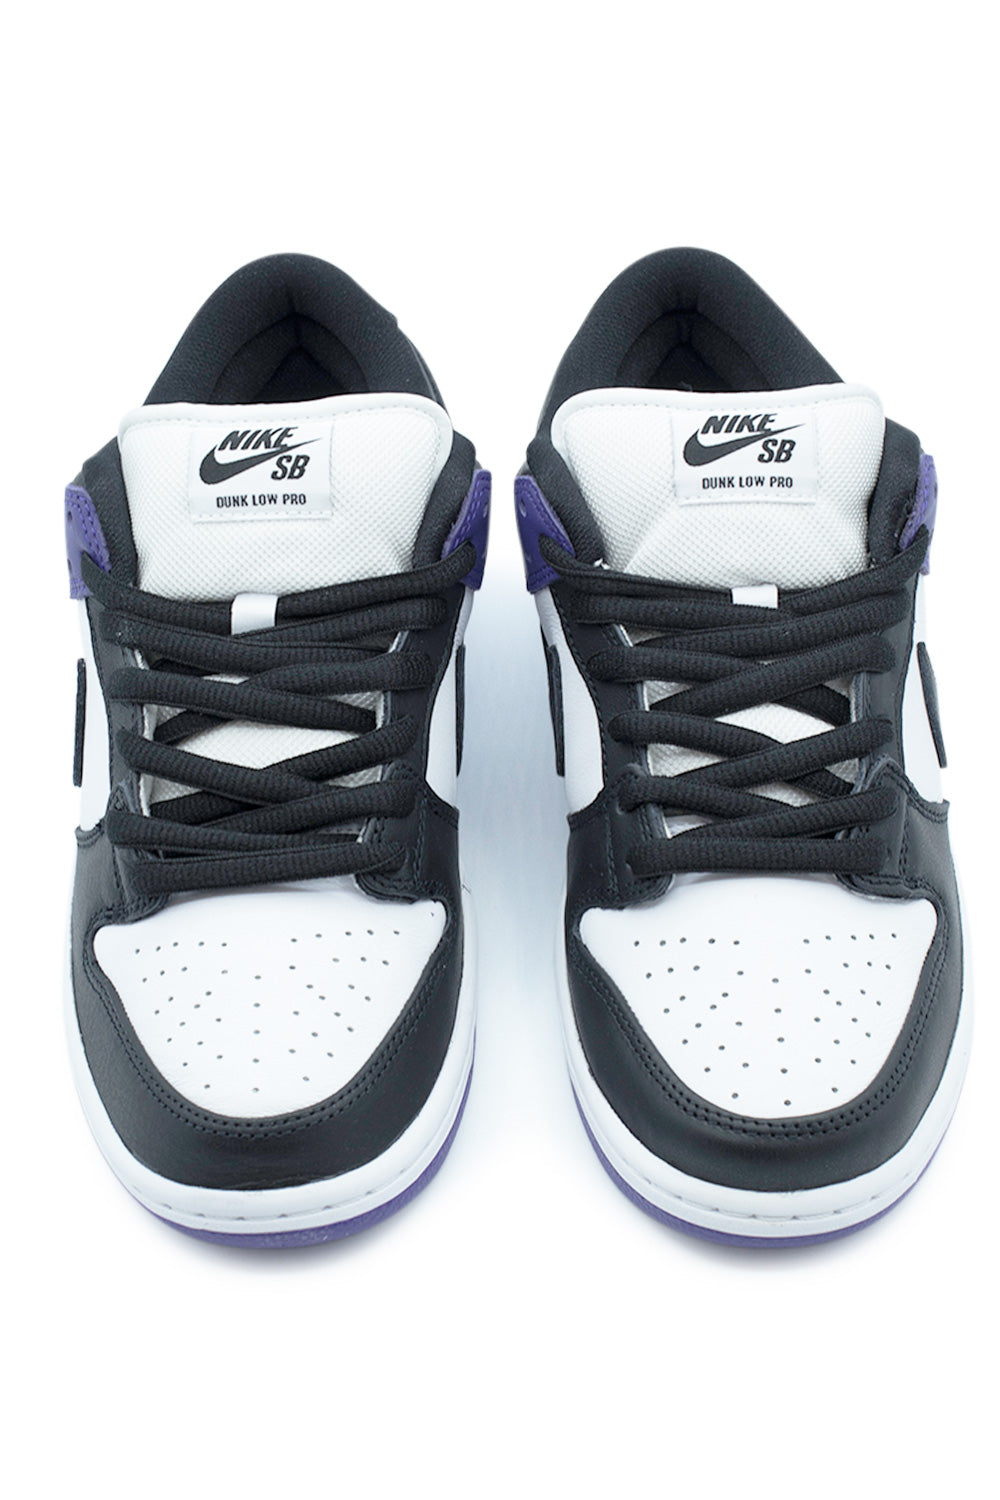 Nike SB Dunk Low Pro Shoe Court Purple / Black / White | BONKERS